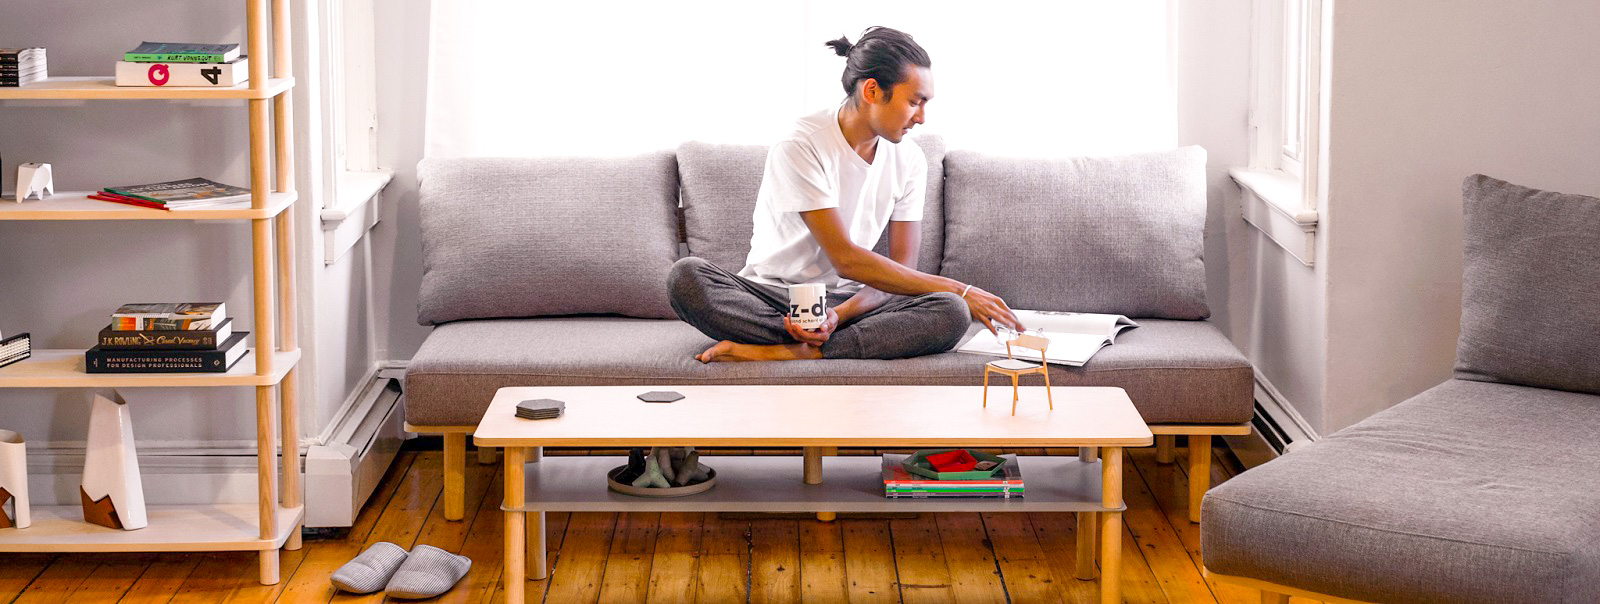 Greycork Living Room Set - суперкомпактний комплект меблів для вітальні